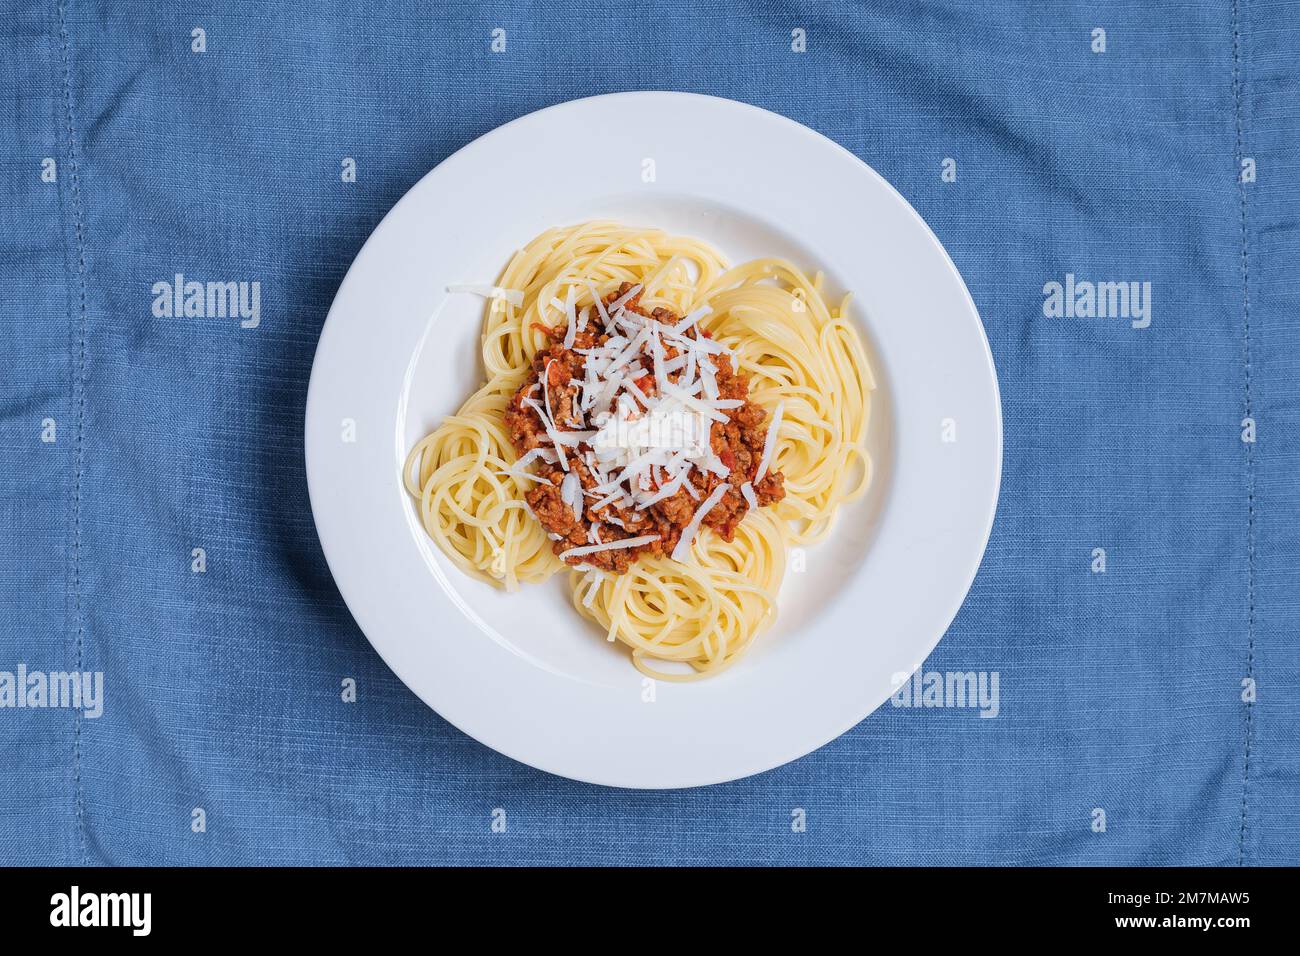 Spaghetti à la bolognaise avec parmesan sur une assiette blanche. Décor et arrière-plan bleus simples. Plats italiens traditionnels, cuisine méditerranéenne Banque D'Images